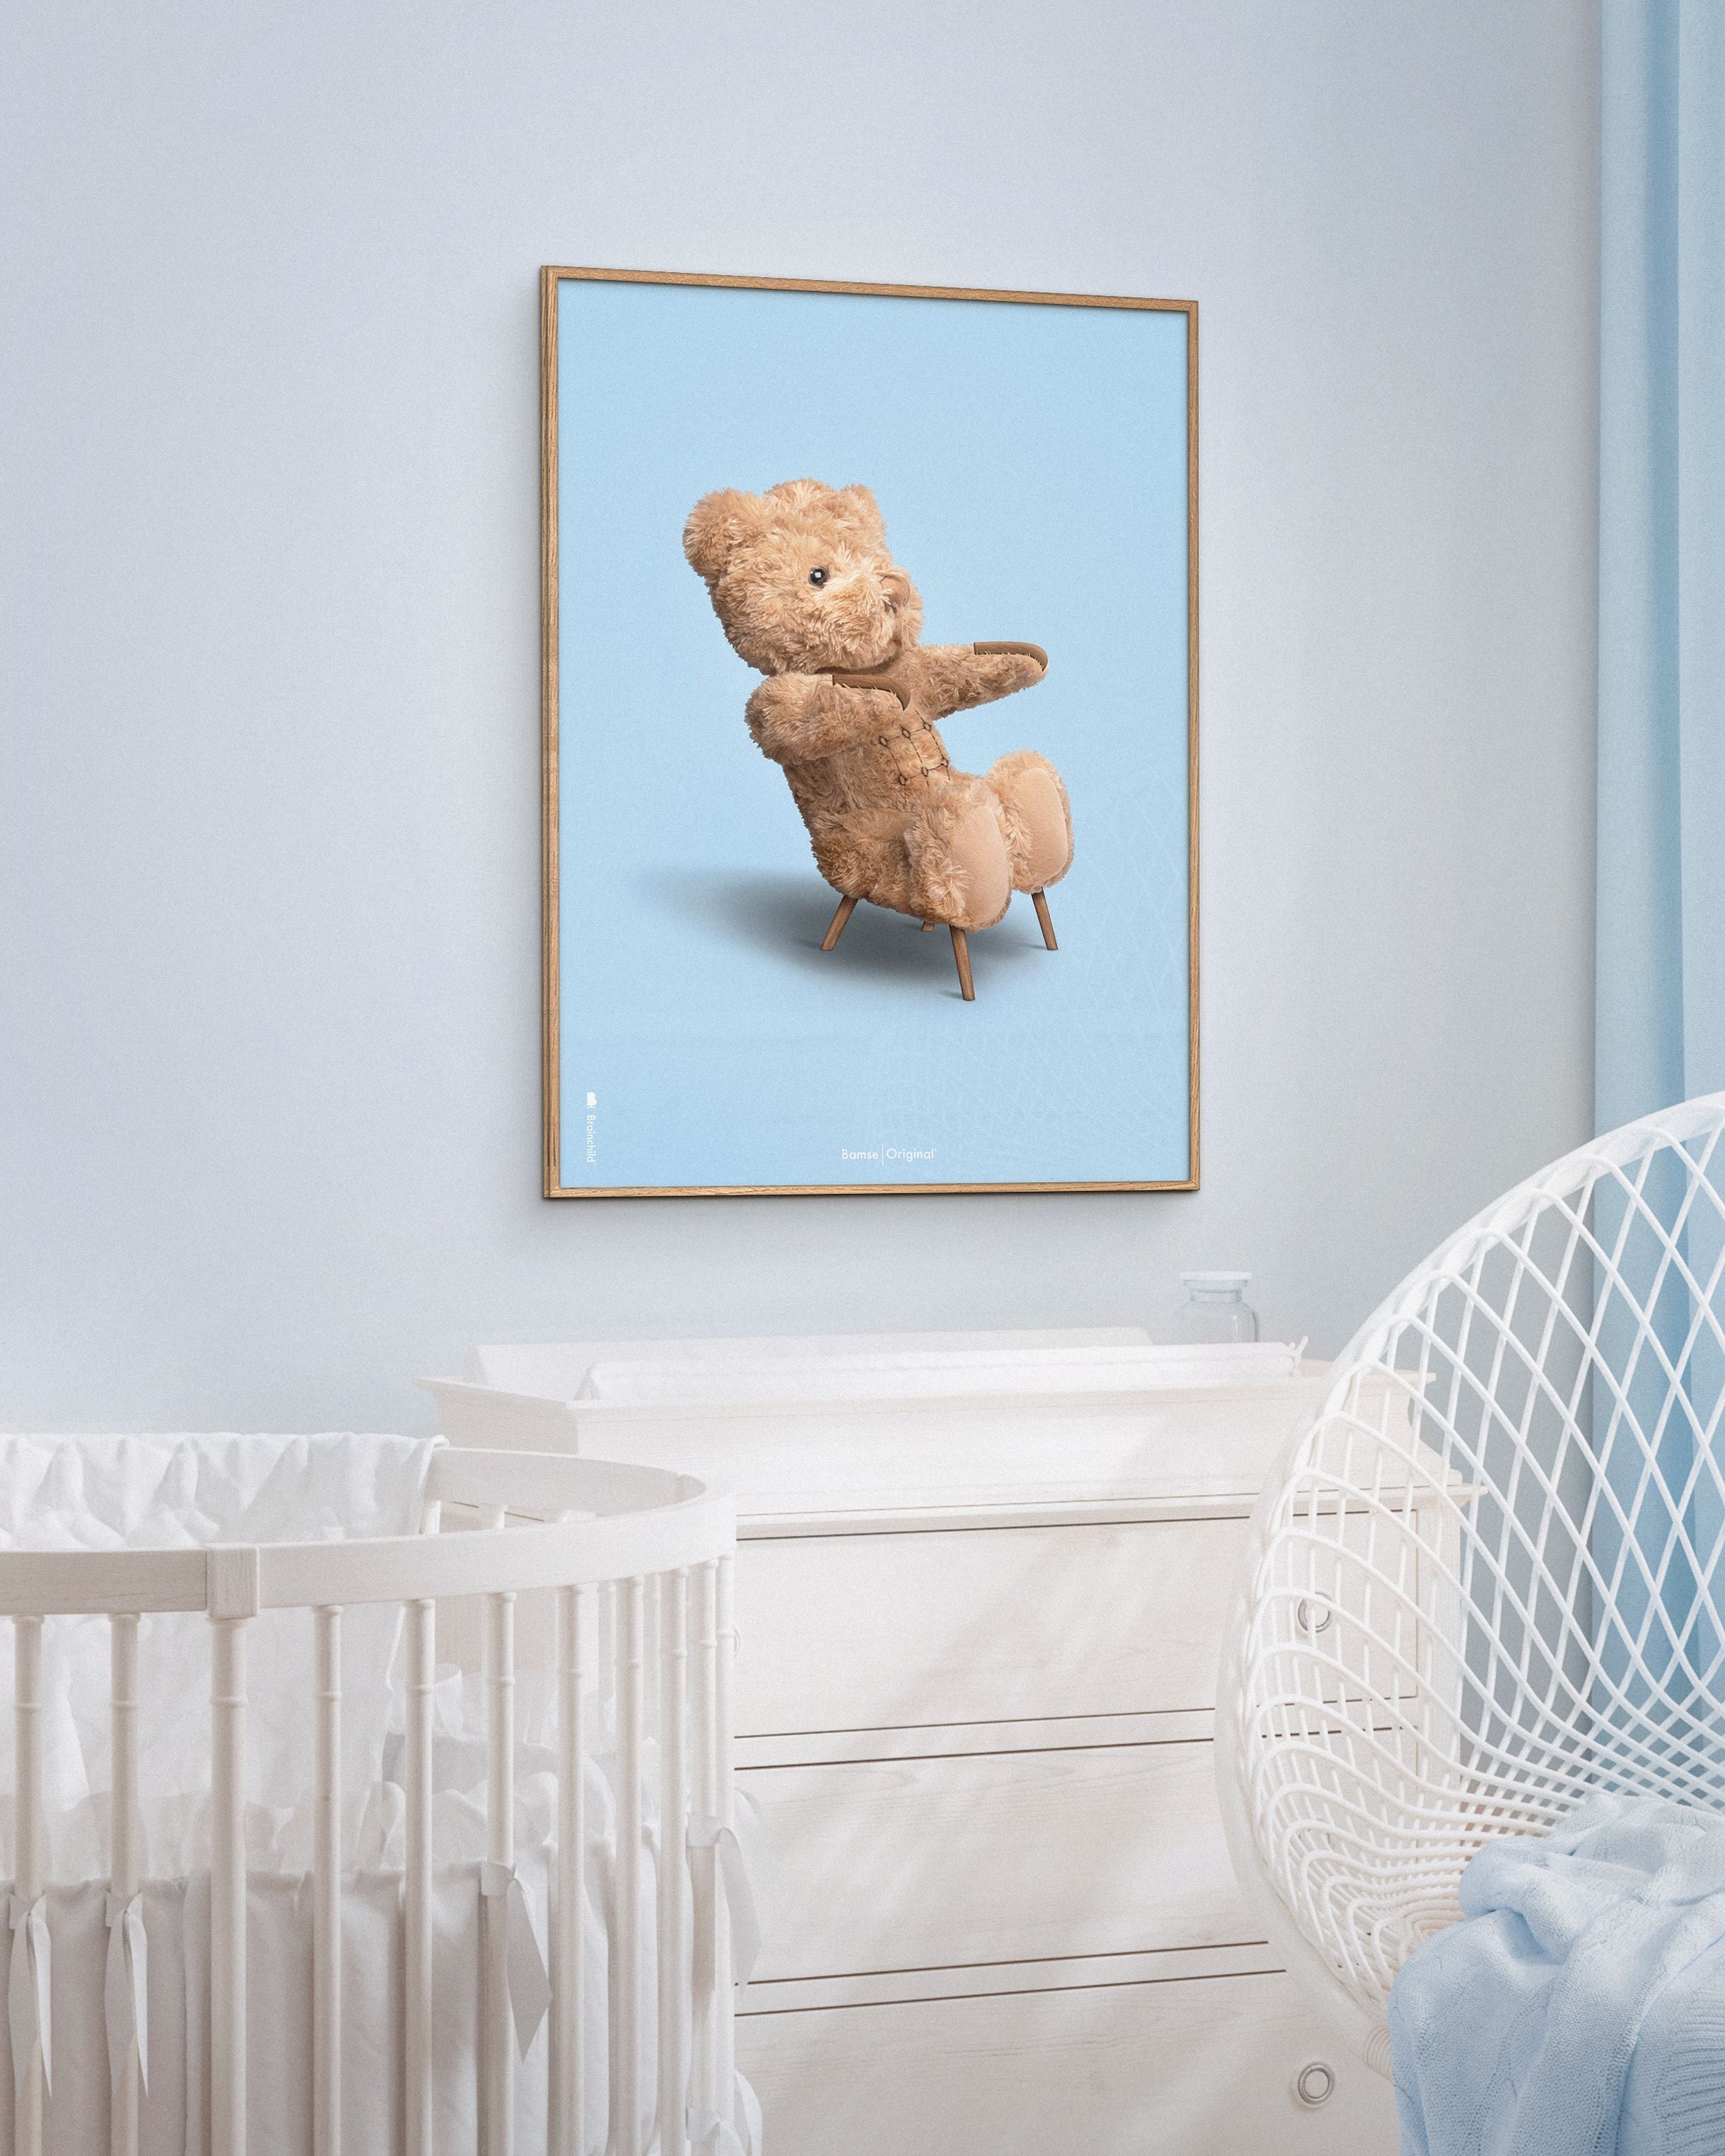 Brainchild Teddy Bear Classic plakát Světelné dřevěné rámeček Ramme A5, světle modré pozadí